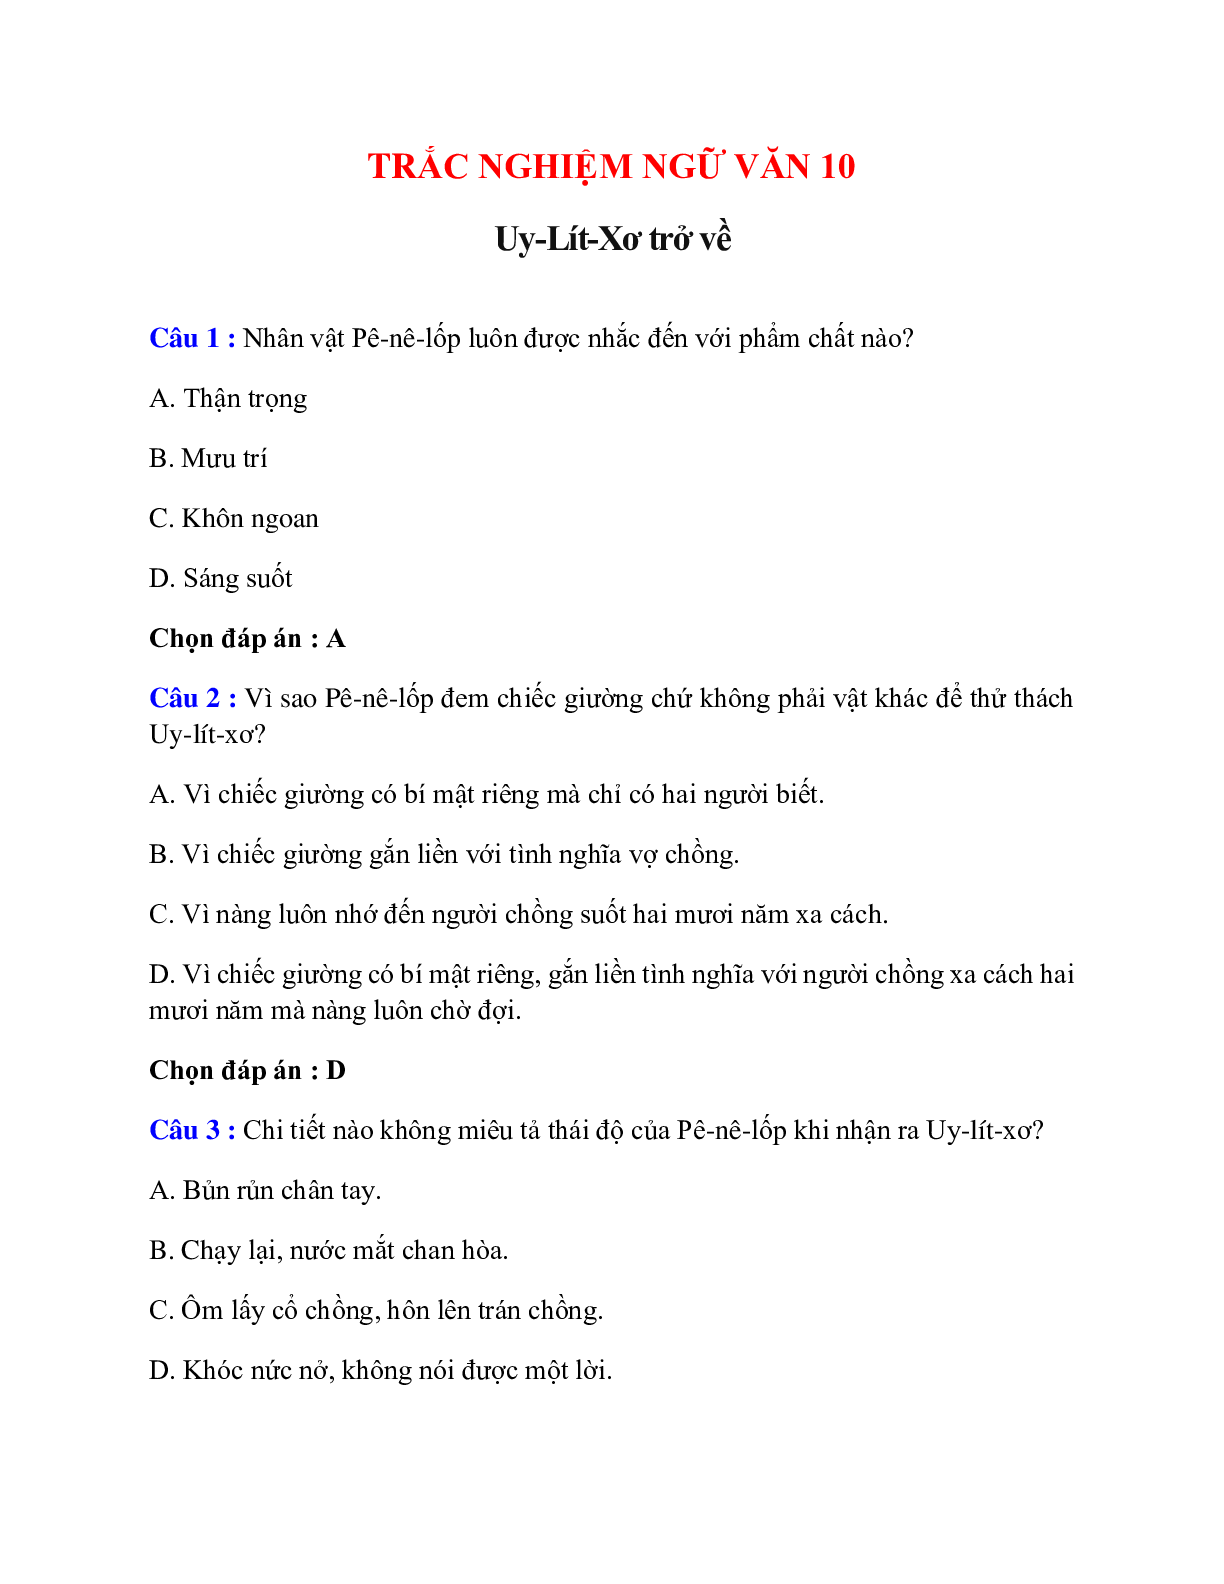 Trắc nghiệm Uy-Lít-Xơ trở về có đáp án – Ngữ văn lớp 10 (trang 1)